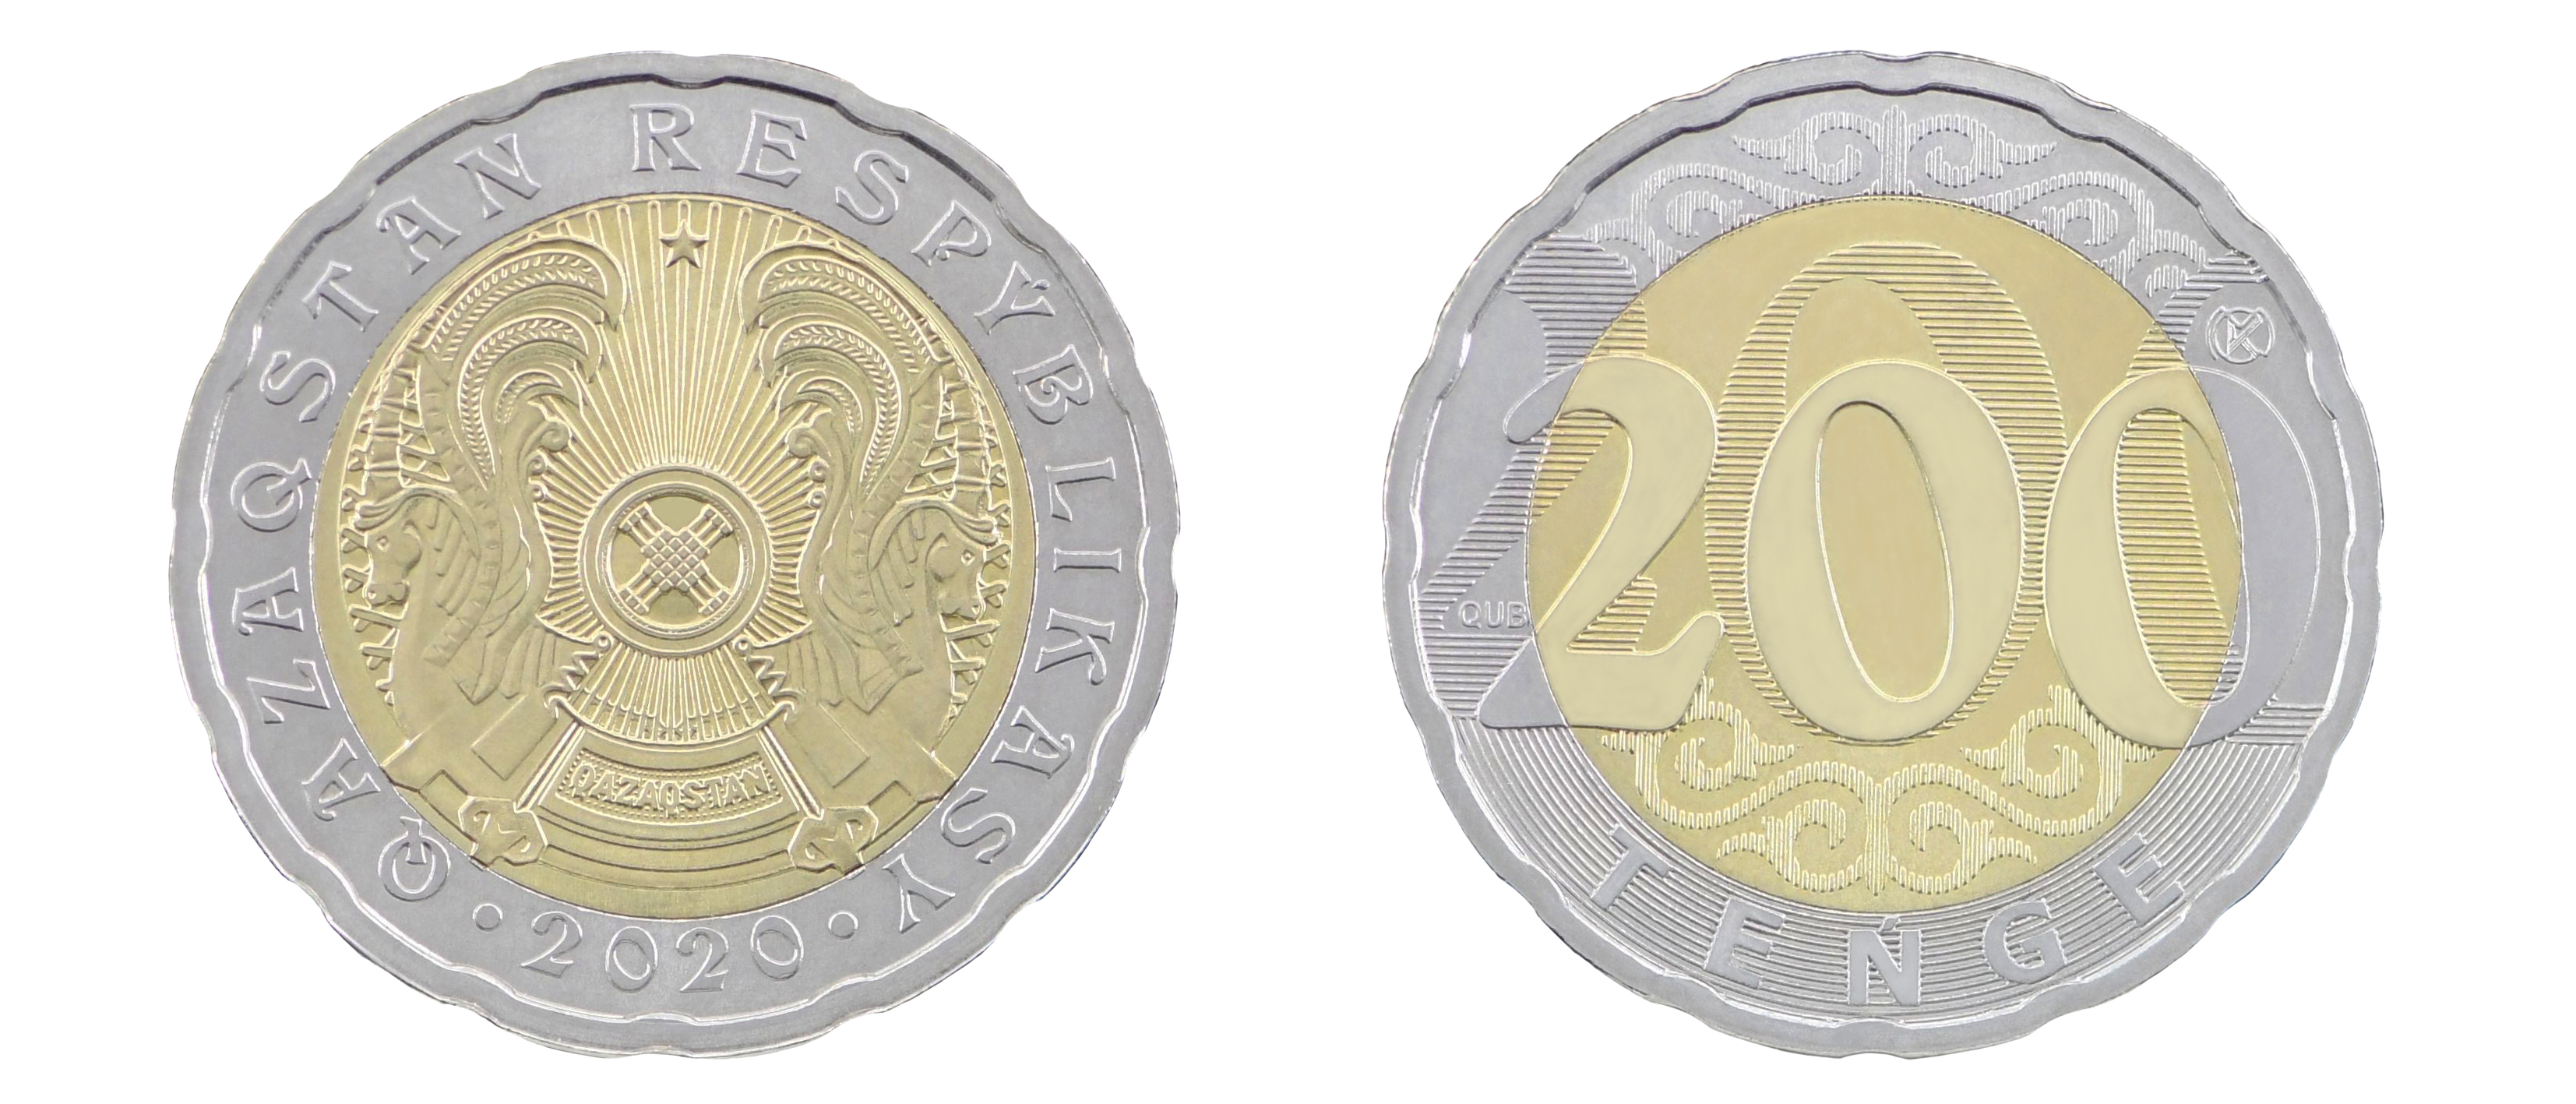 Нацбанк выпустил в обращение монеты номиналом 200 тенге 